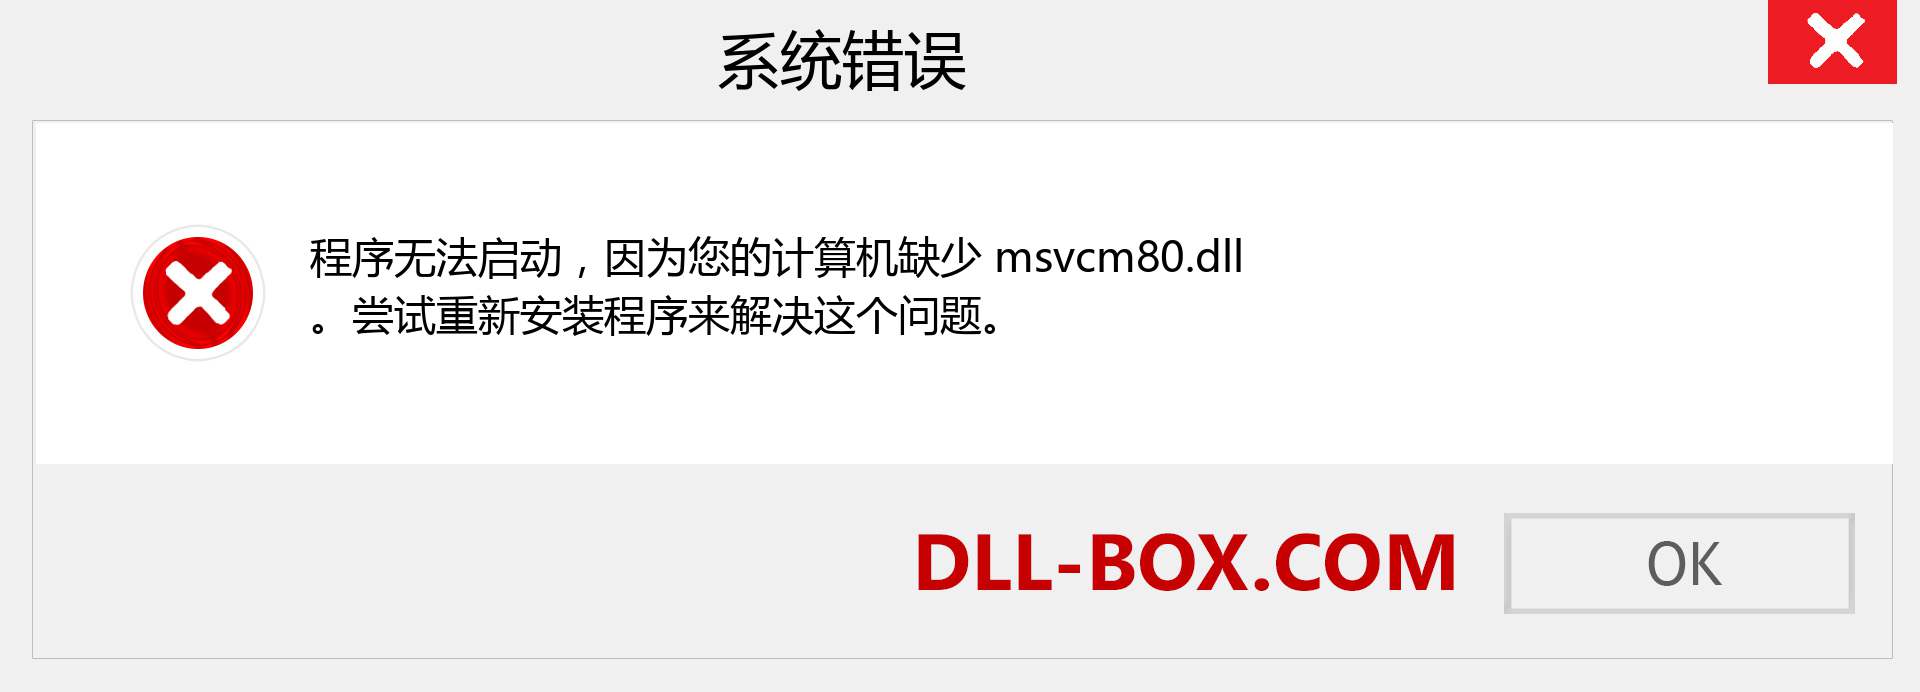 msvcm80.dll 文件丢失？。 适用于 Windows 7、8、10 的下载 - 修复 Windows、照片、图像上的 msvcm80 dll 丢失错误